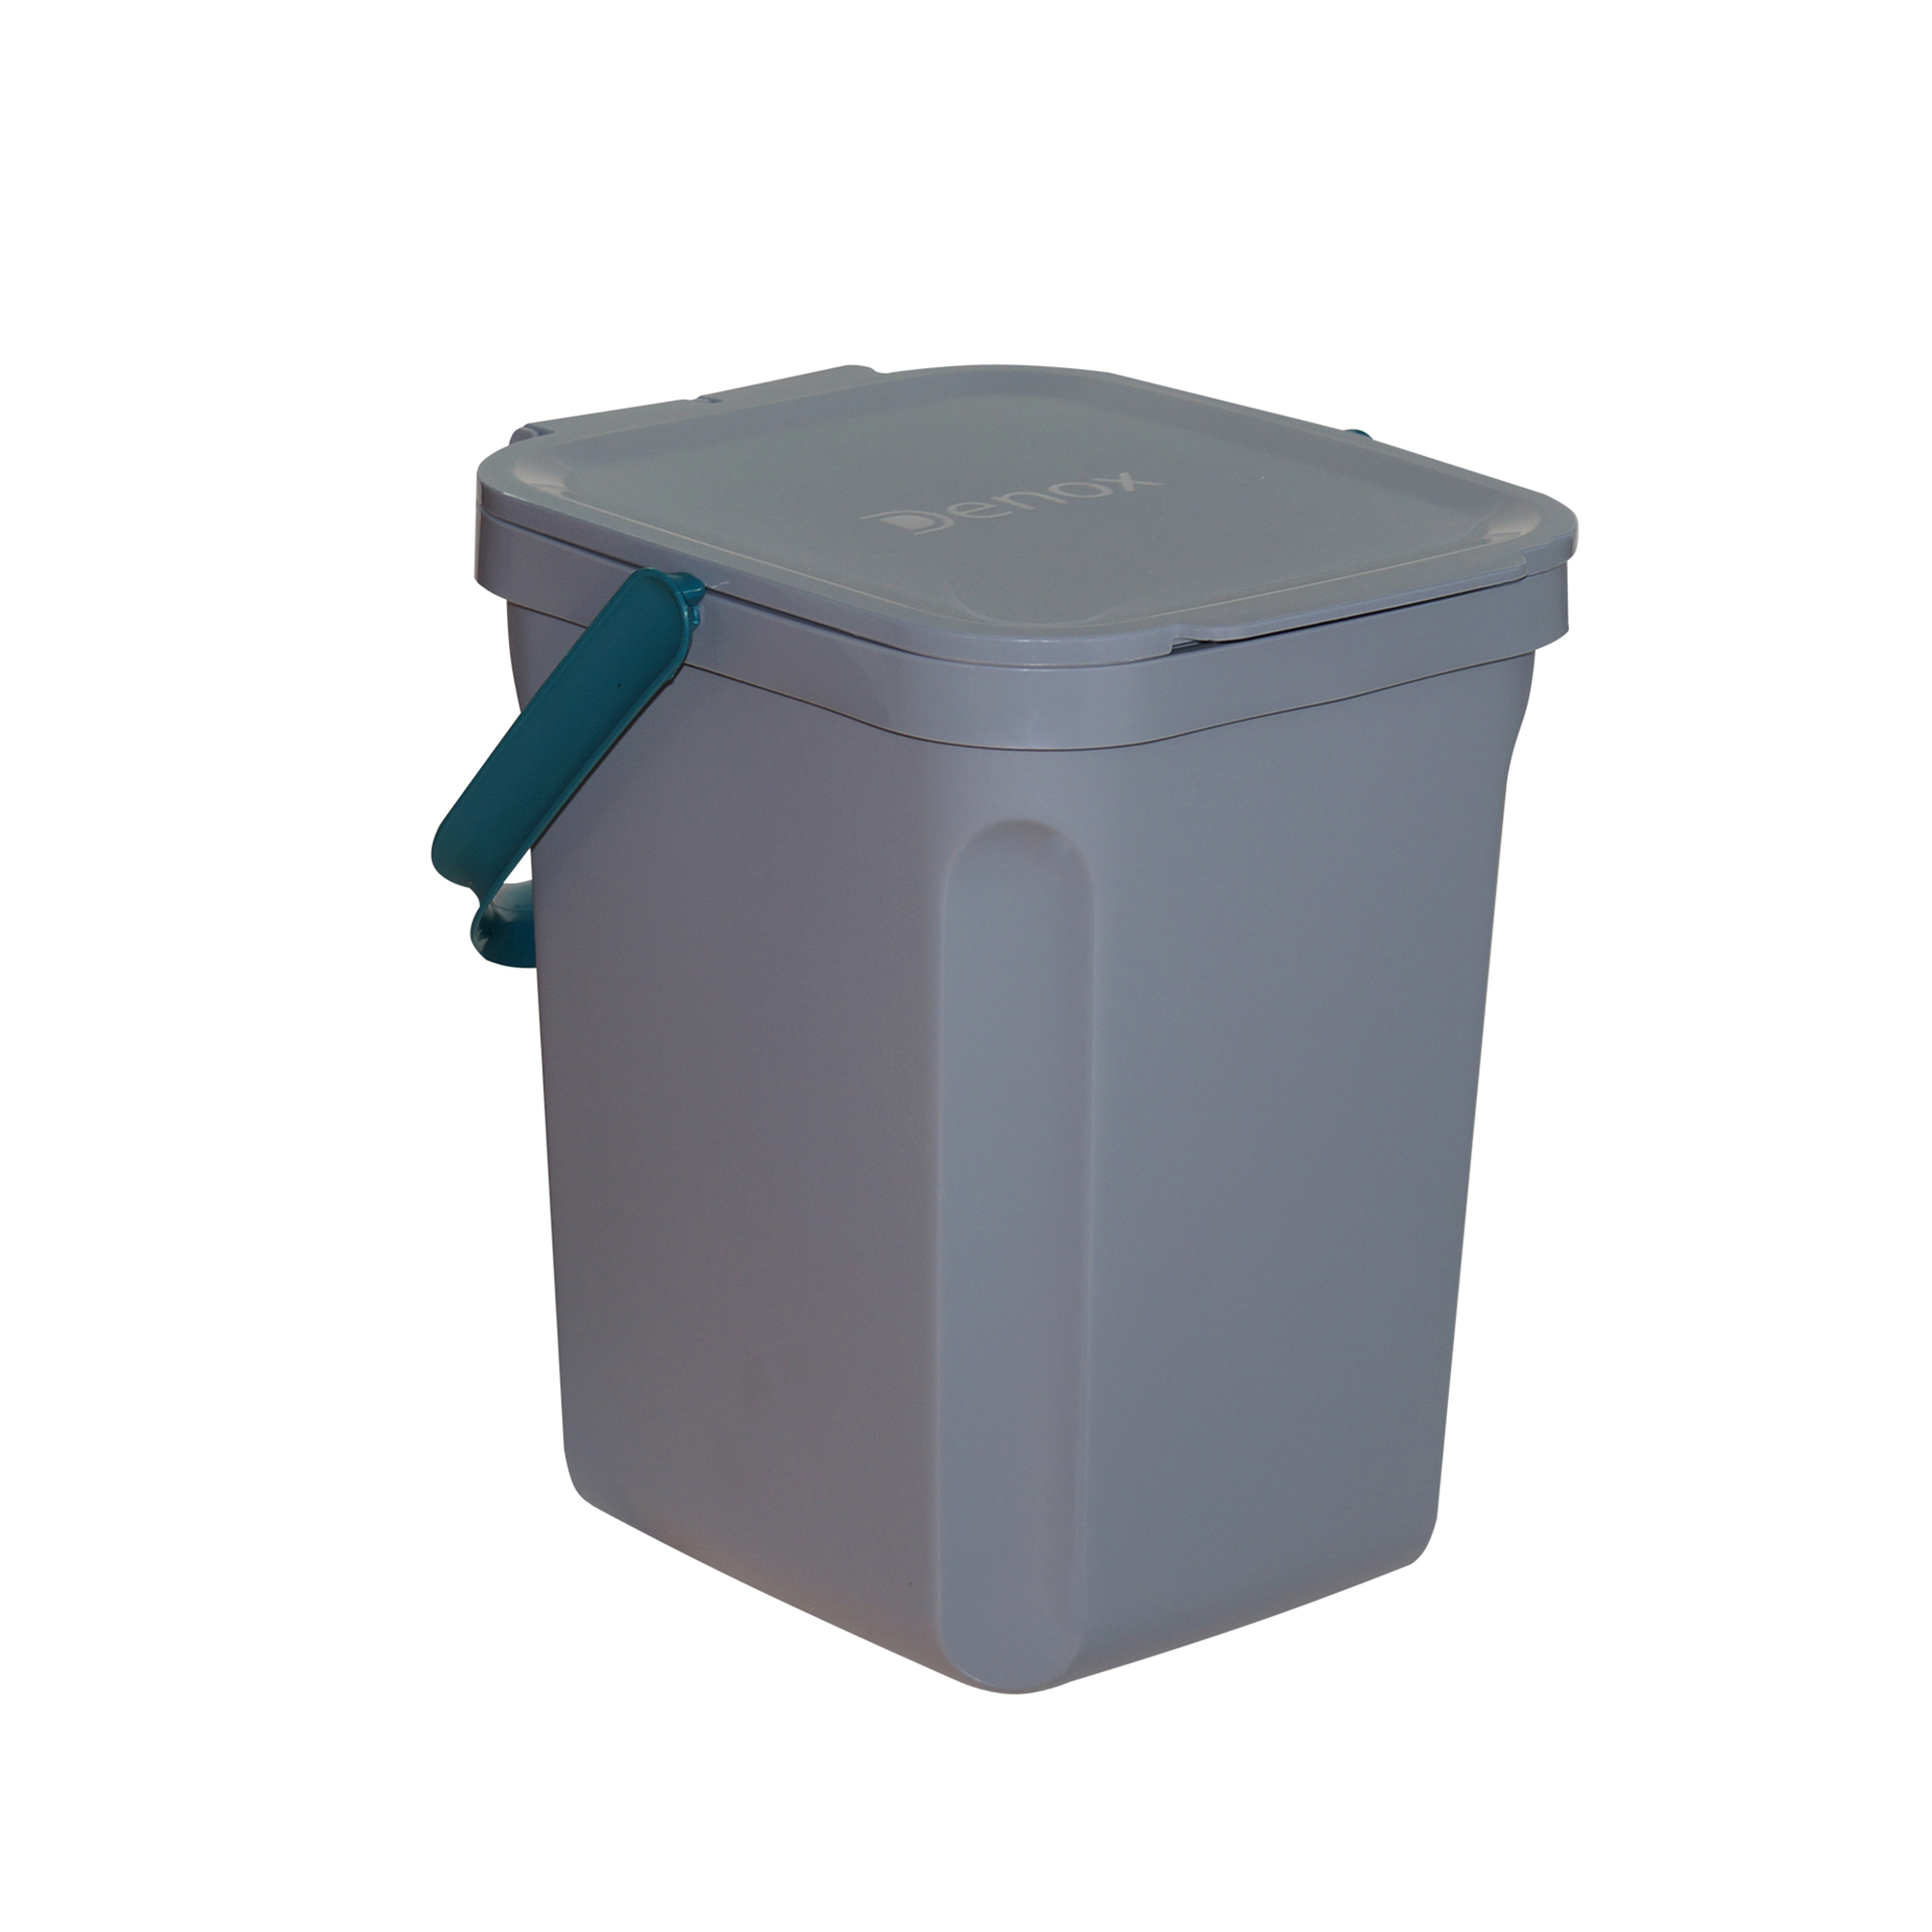 Denox - Denox Cubo Orgánico 10L para Separación de Residuos con Cierre Asegurado y Diseño Redondeado